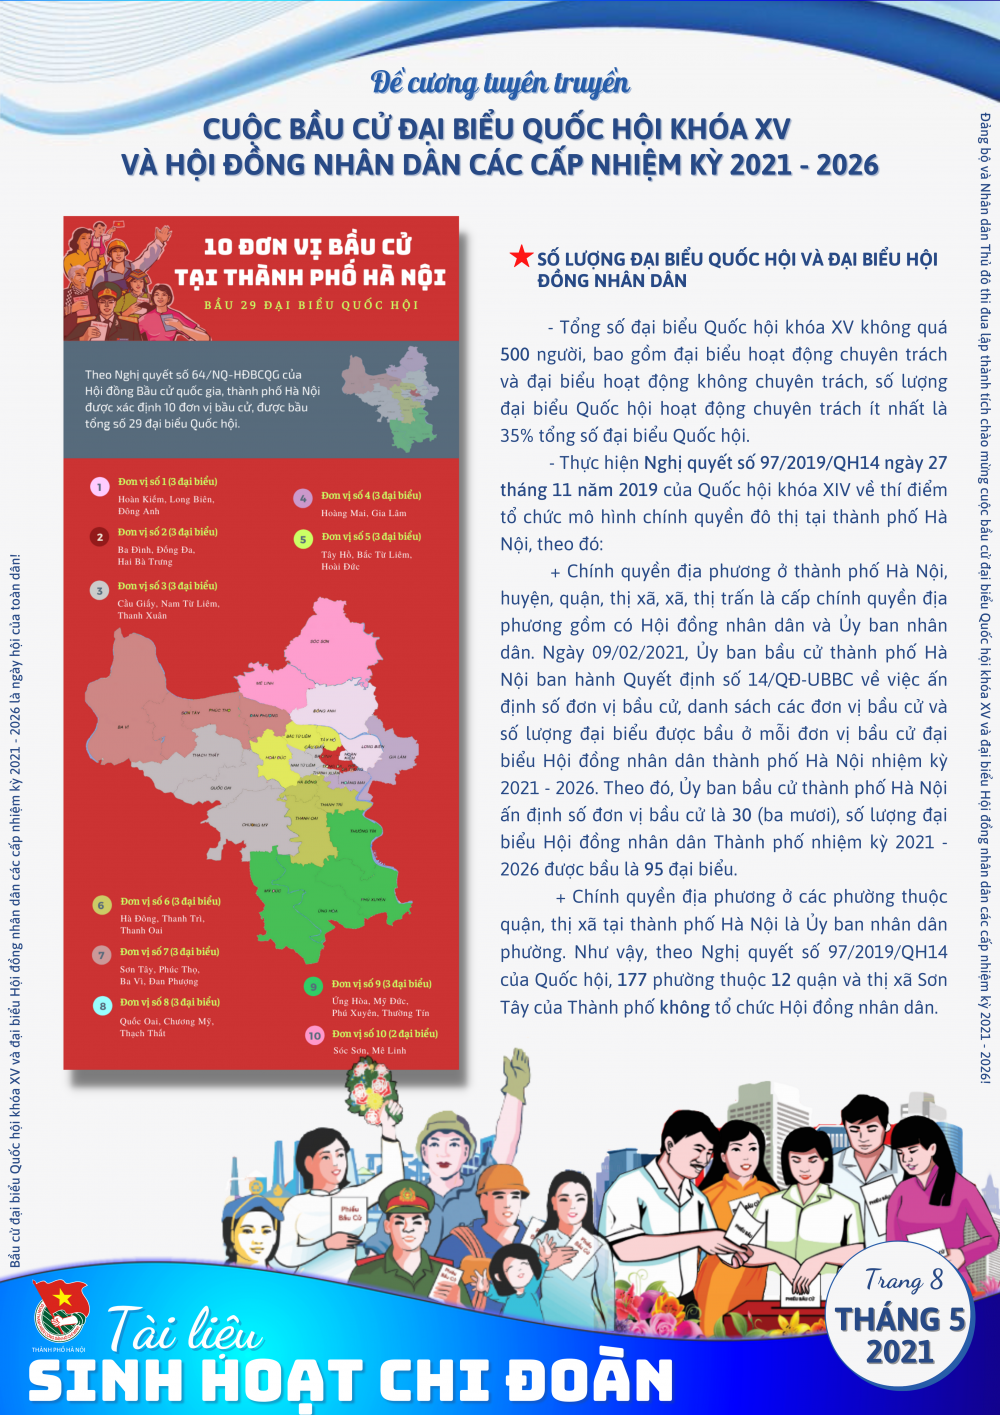 Thành đoàn Hà Nội phát hành tài liệu sinh hoạt chi đoàn chủ đề 